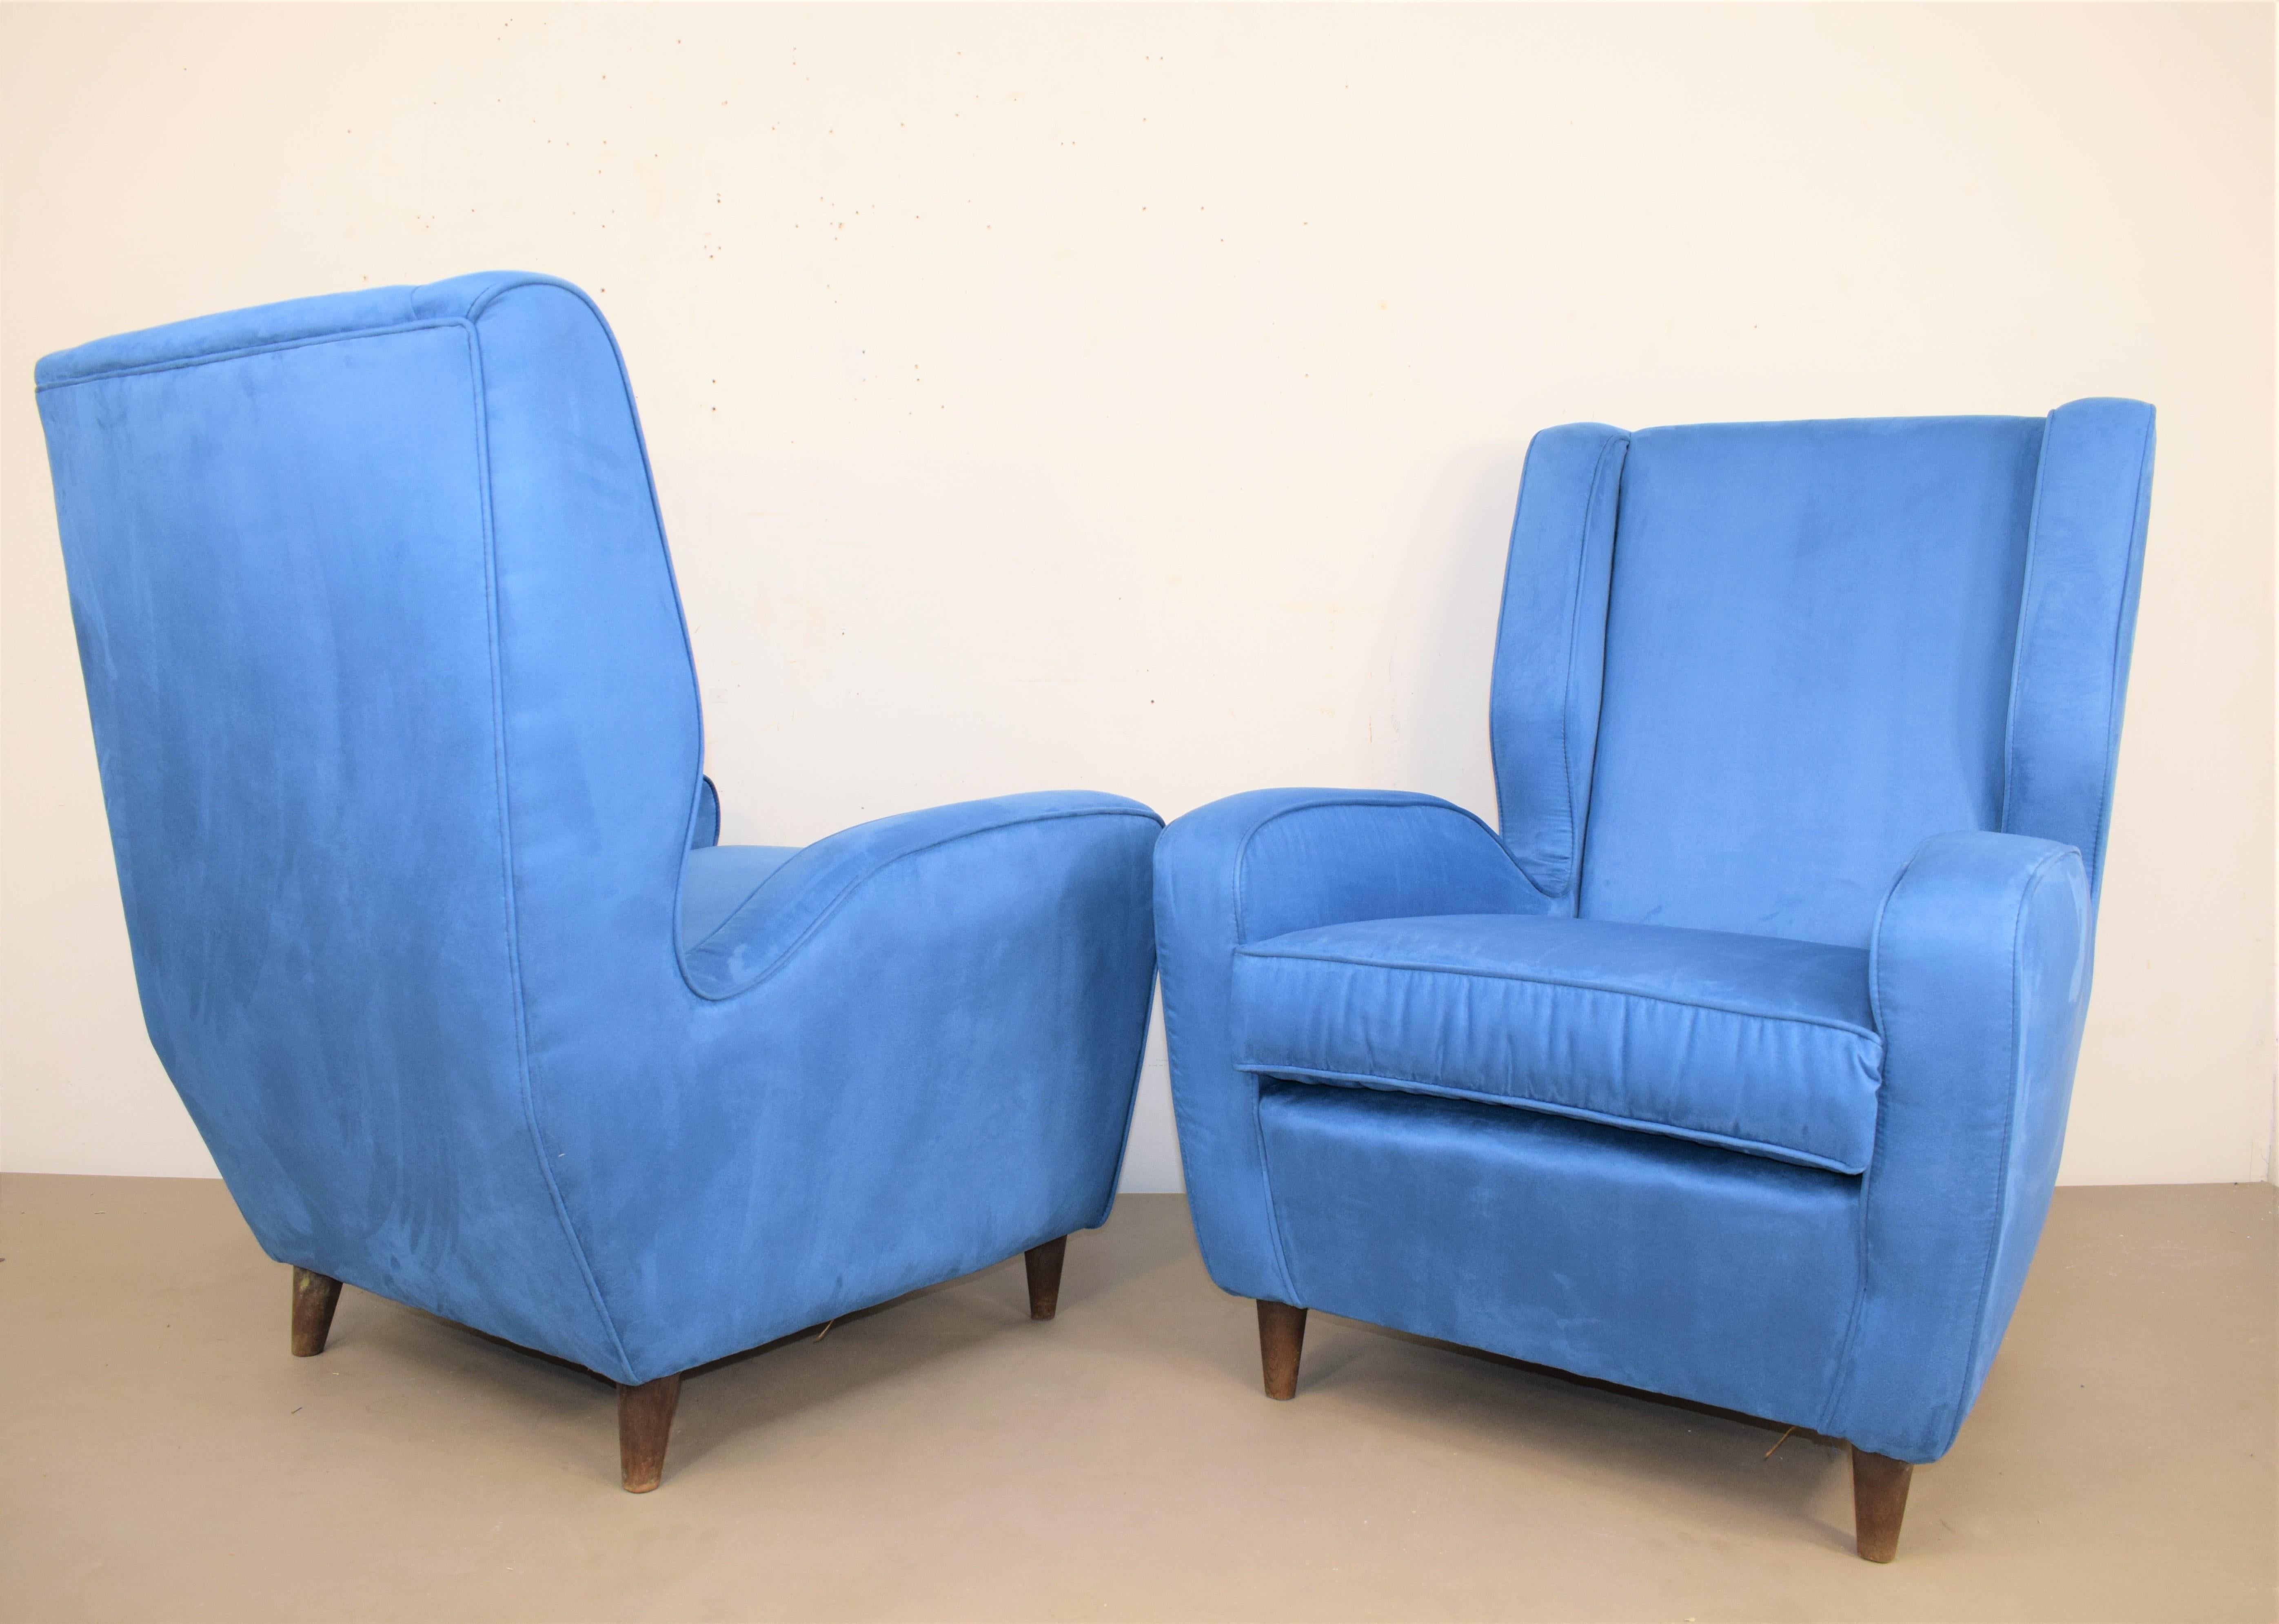 Paire de fauteuils, Melchiorre Bega (dans le style de), production italienne des années 1950.
Bois et tissu.
Excellent état, aucun défaut (voir photos).

Dimensions : 
H : 95cm ; D : 73cm ; L= 78cm ; Assise H = 46cm.